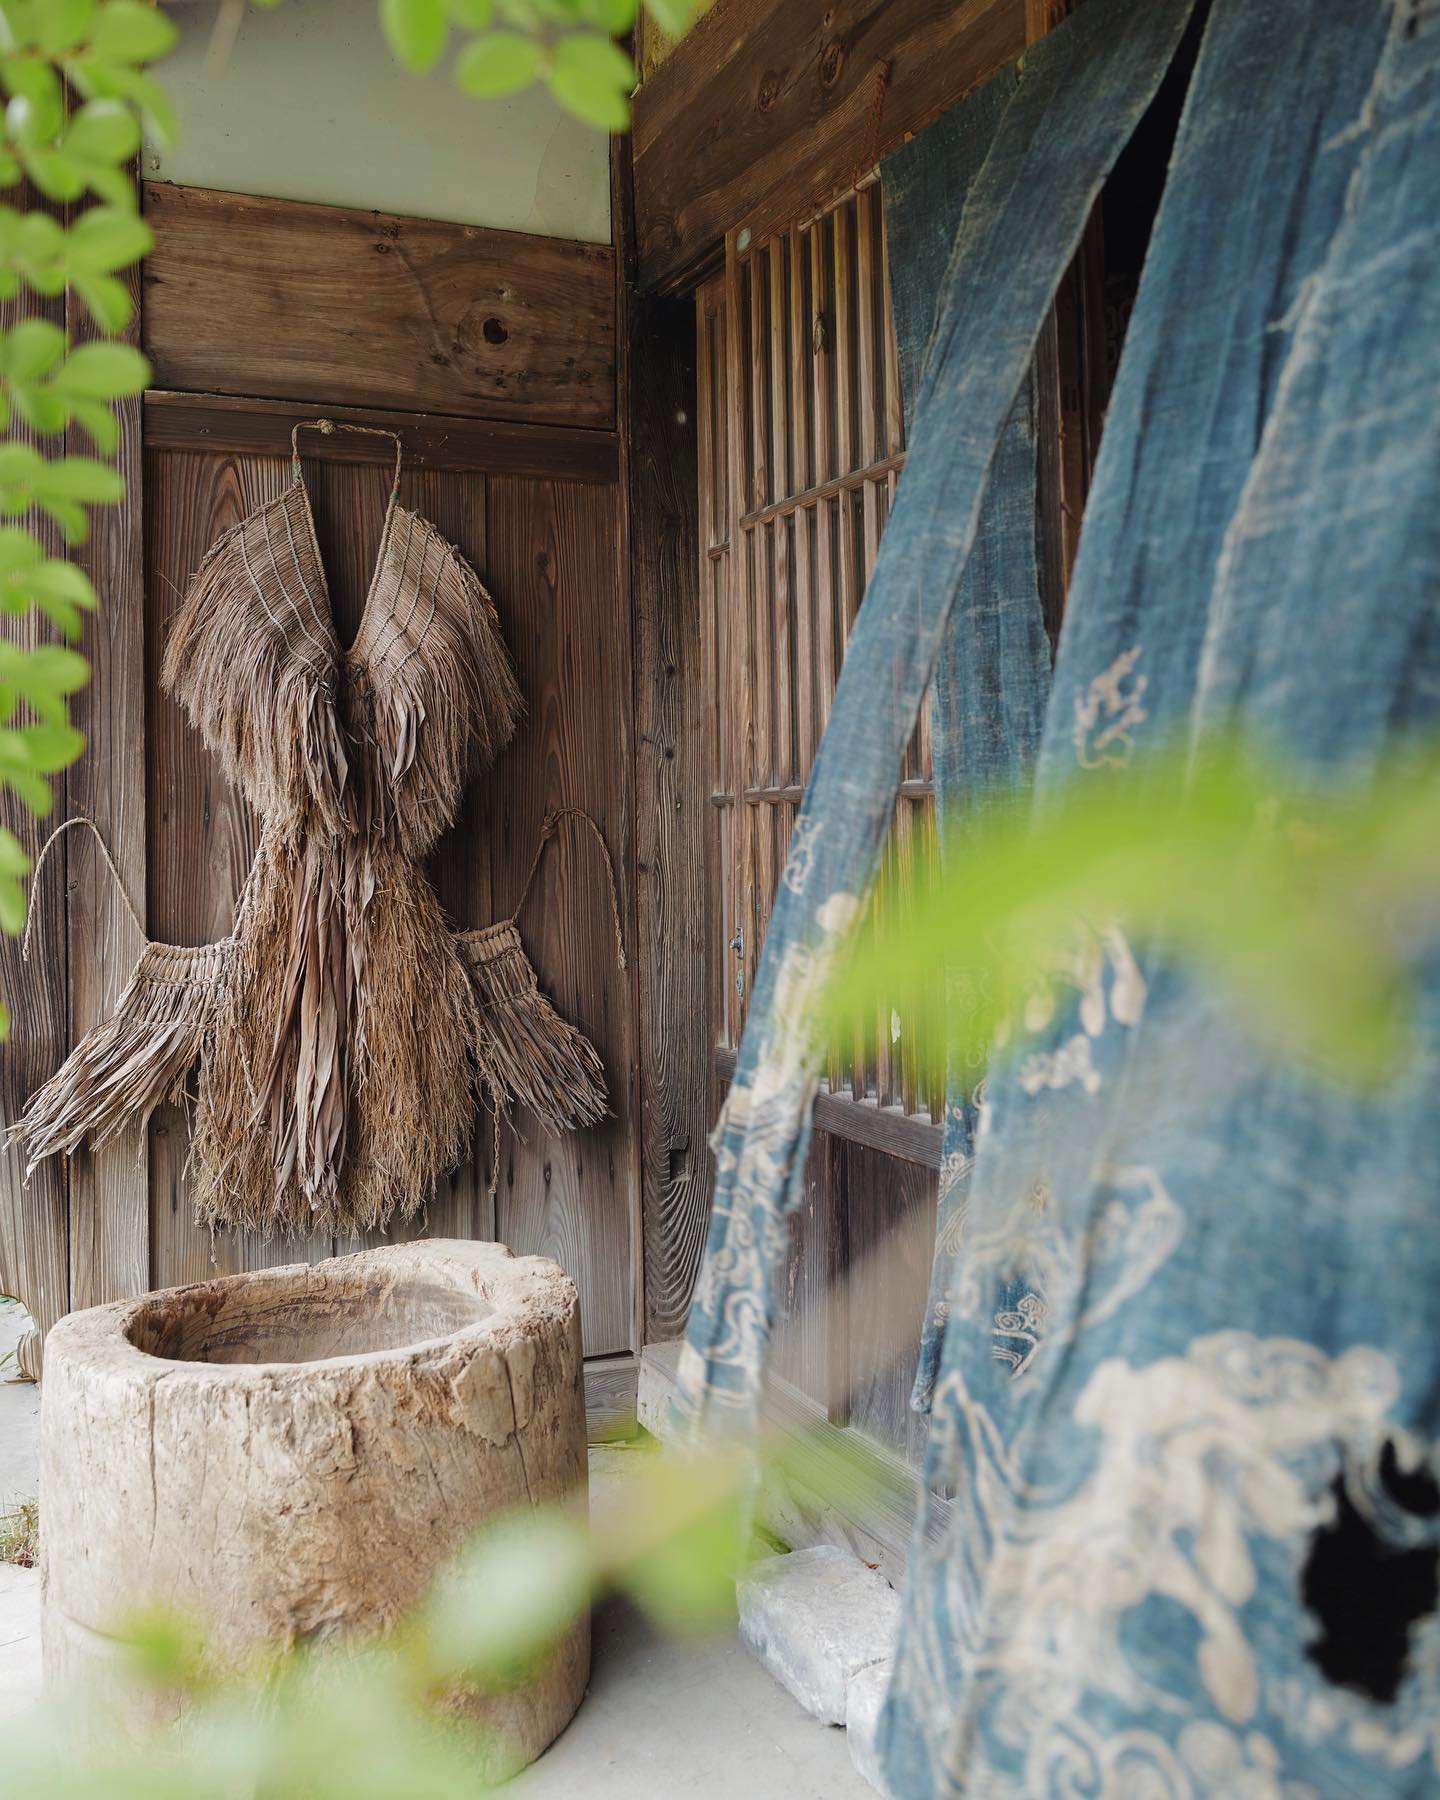 Vintage hand-woven rain cape Japan